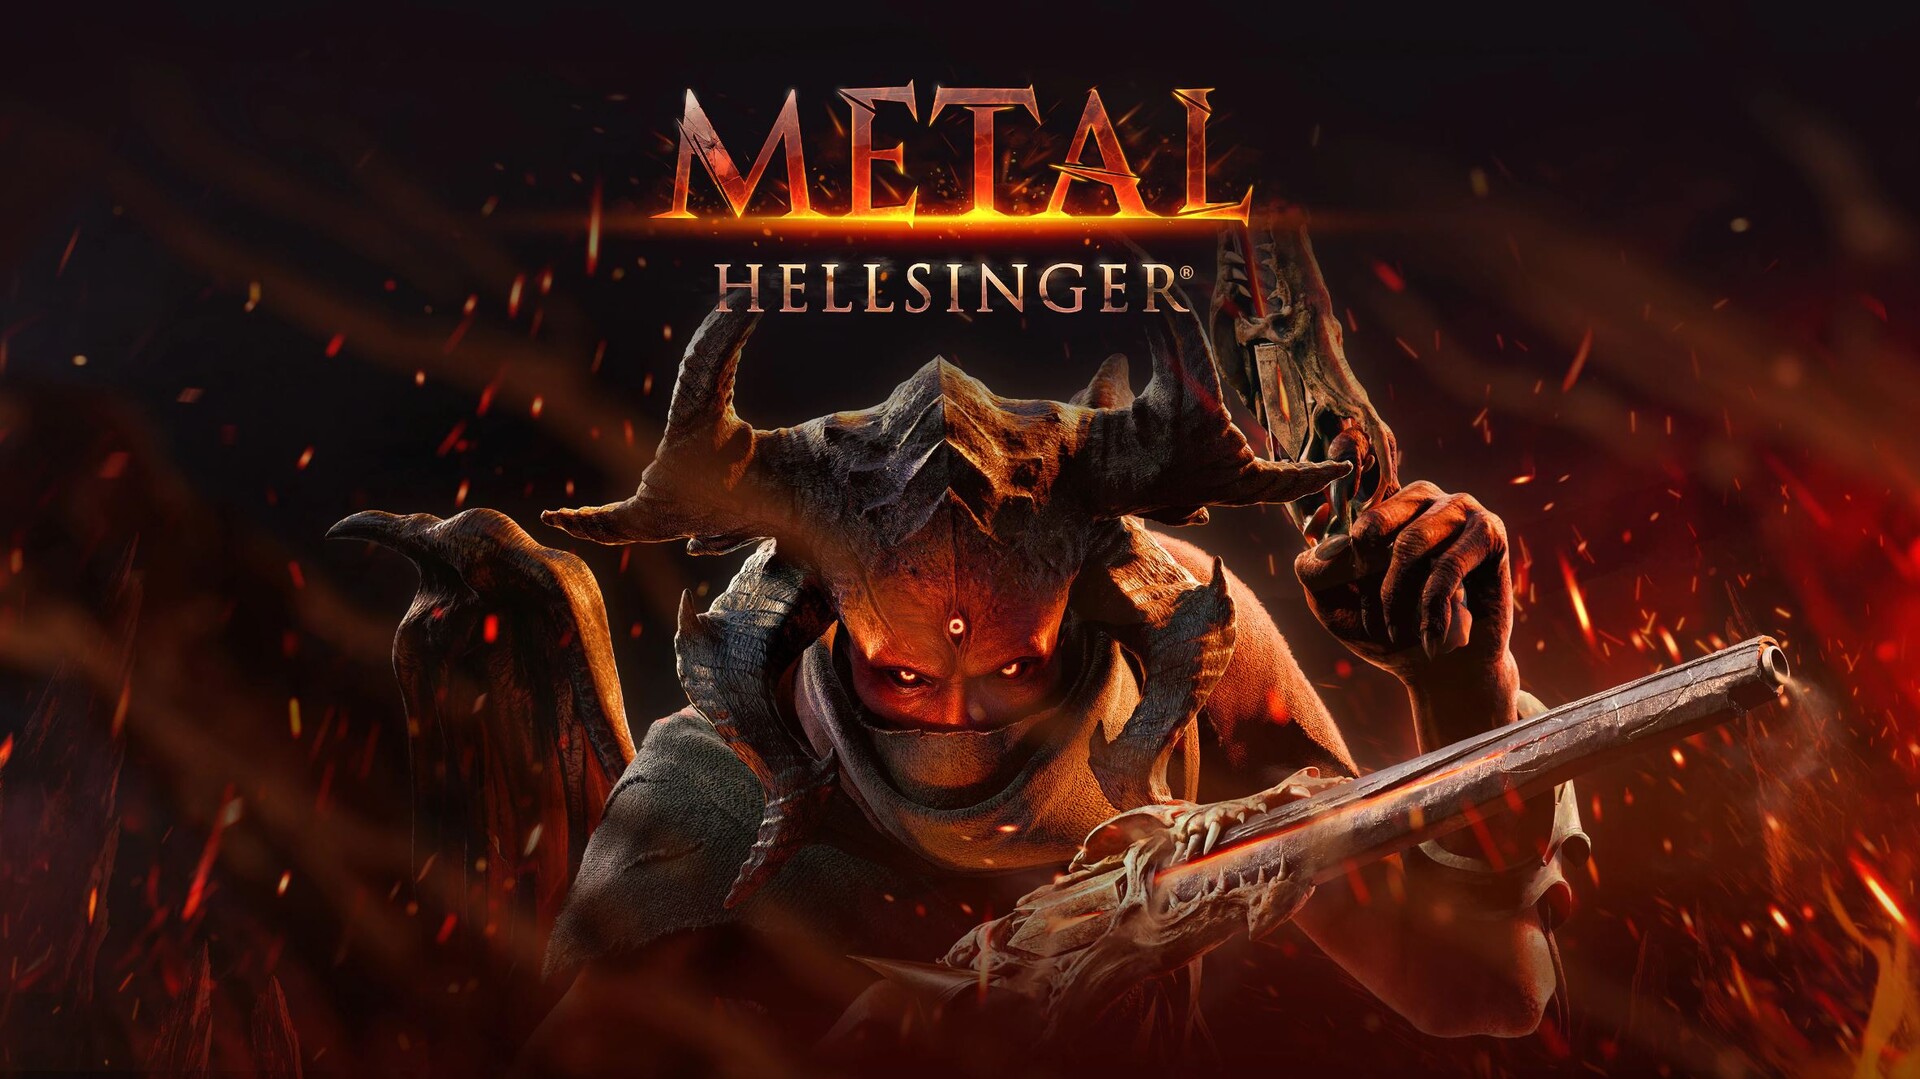 ArtStation - Metal: Hellsinger